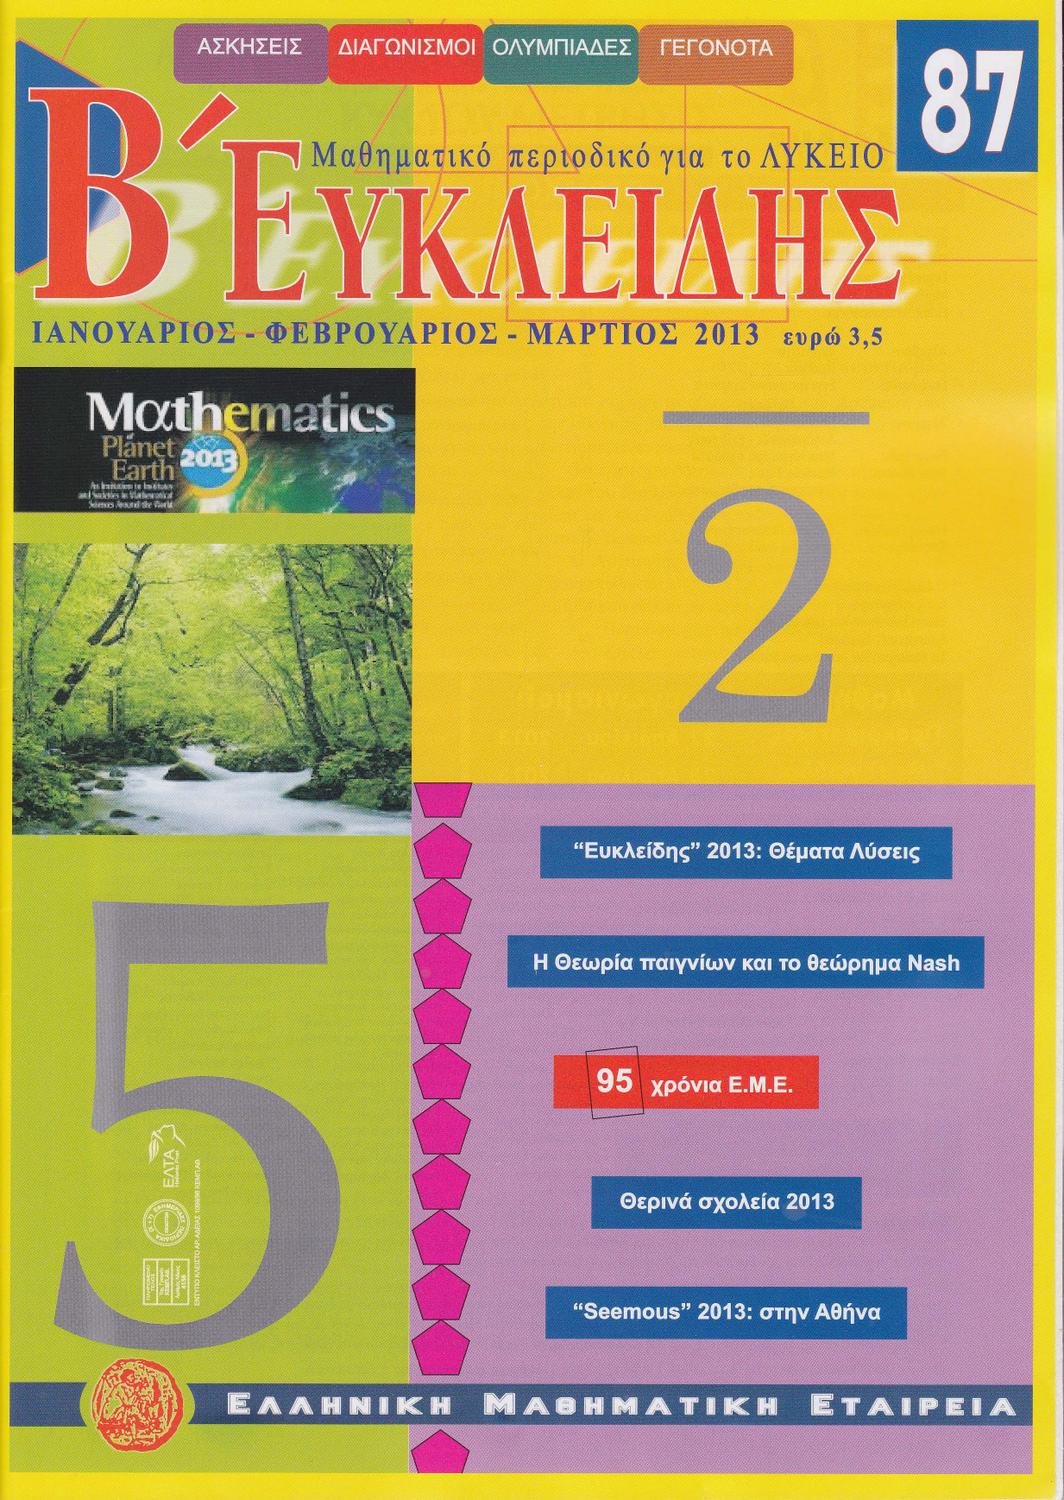 Ελληνική Μαθηματική Εταιρία: Περιοδικό Ευκλείδης Β - τεύχη 13 έως 93